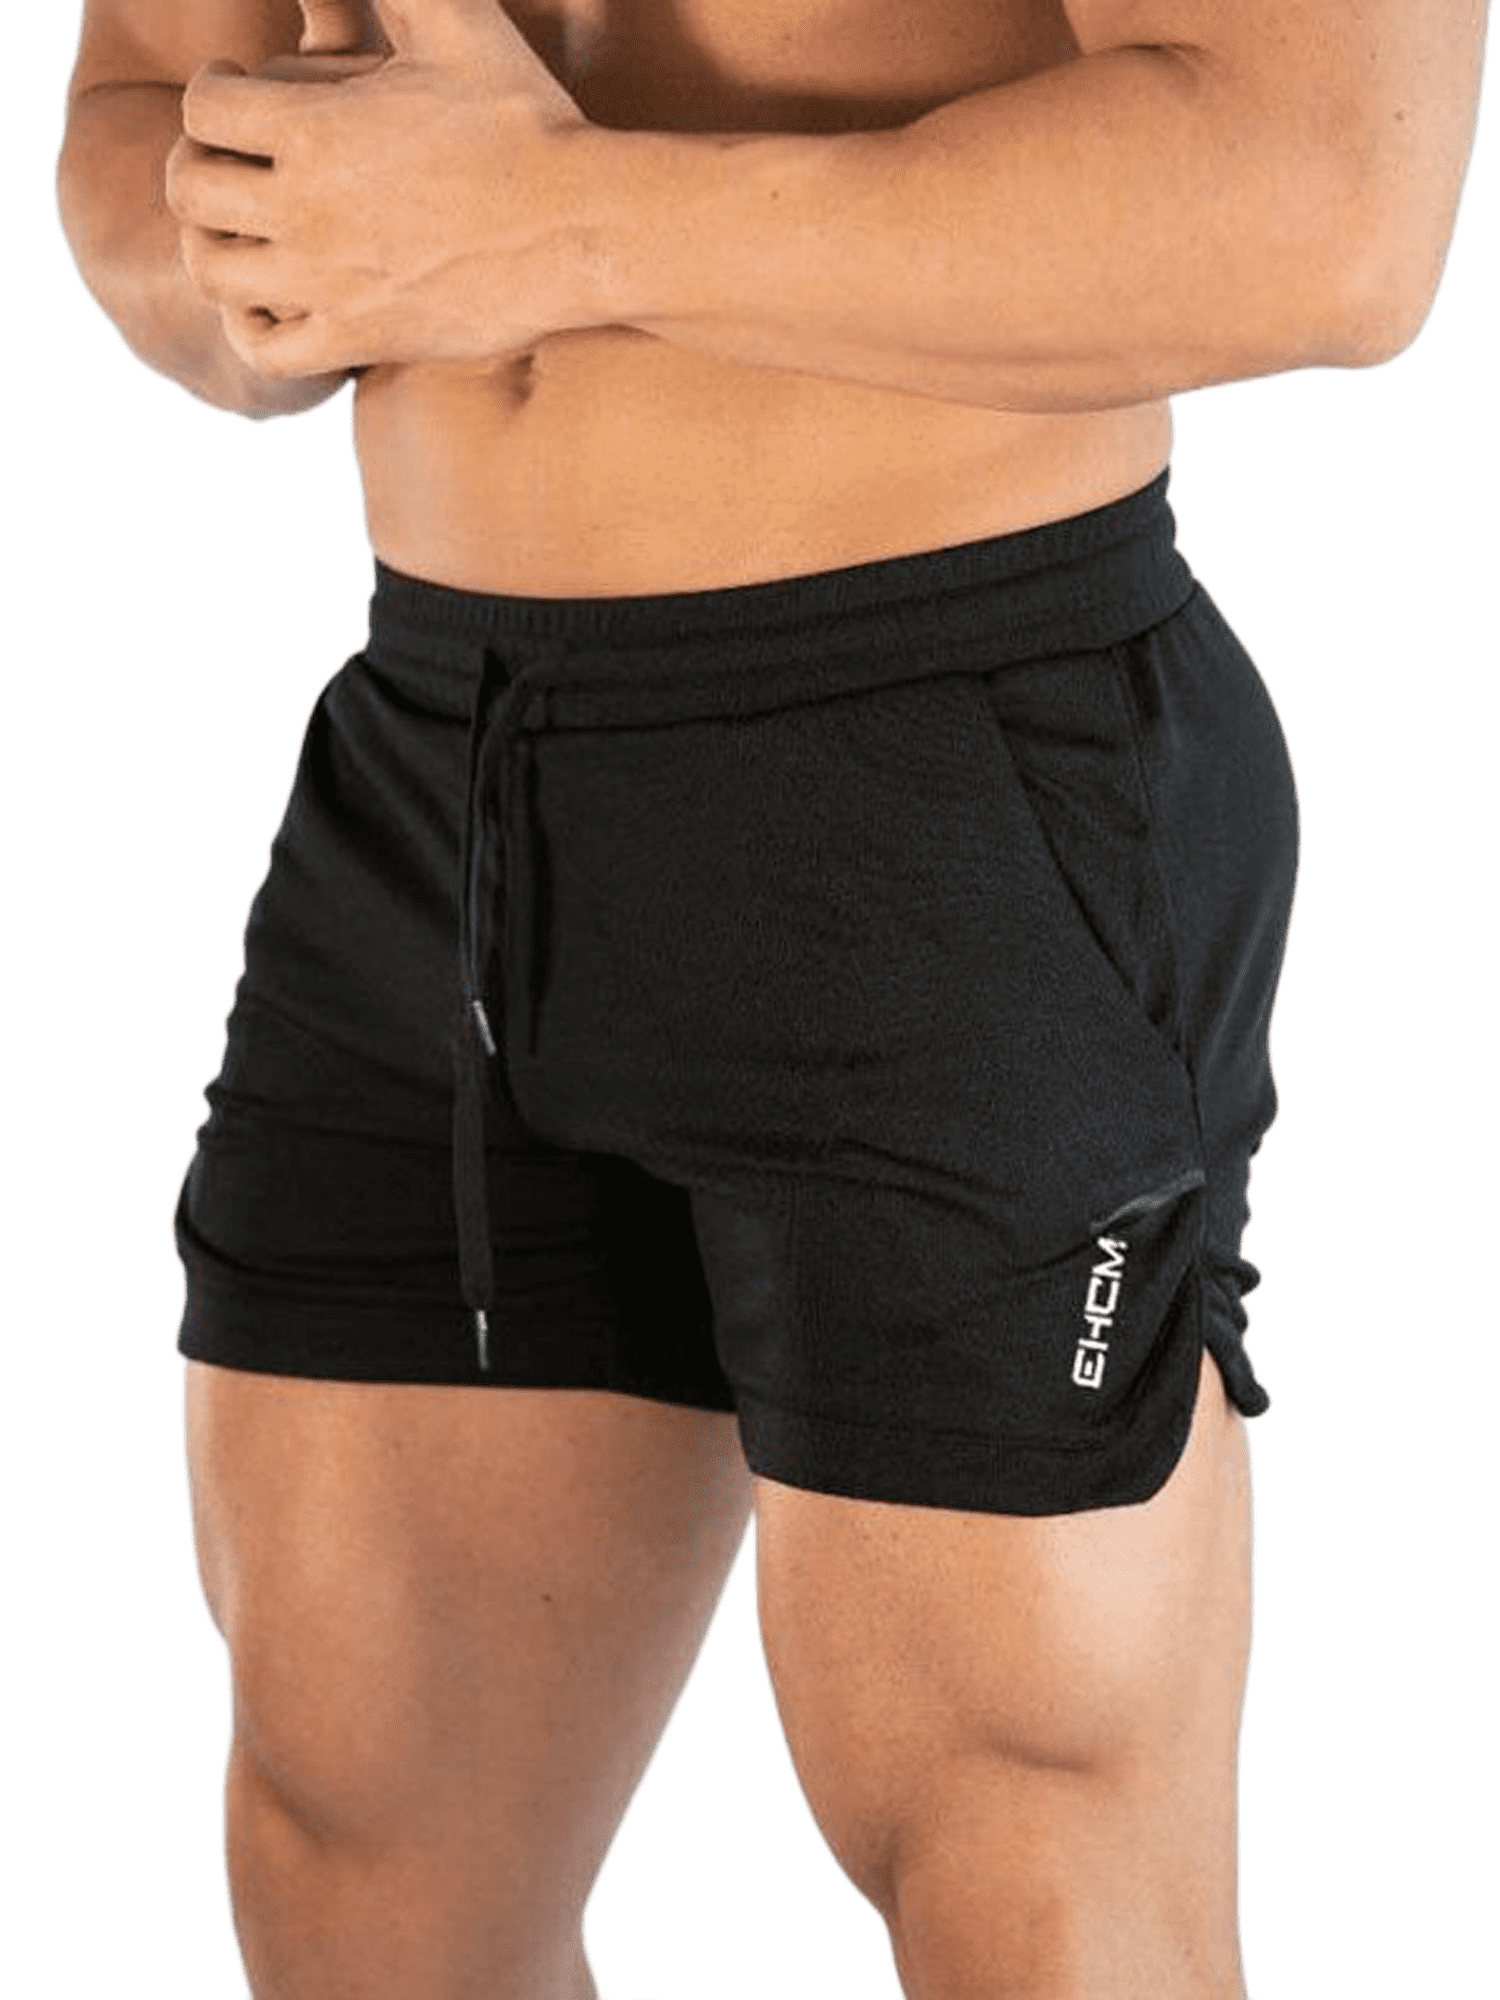 Discriminatie op grond van geslacht Portaal doden JYYYBF Men's Gym Workout Shorts Running Lightweight Athletic Short Pants  Bodybuilding Training - Walmart.com